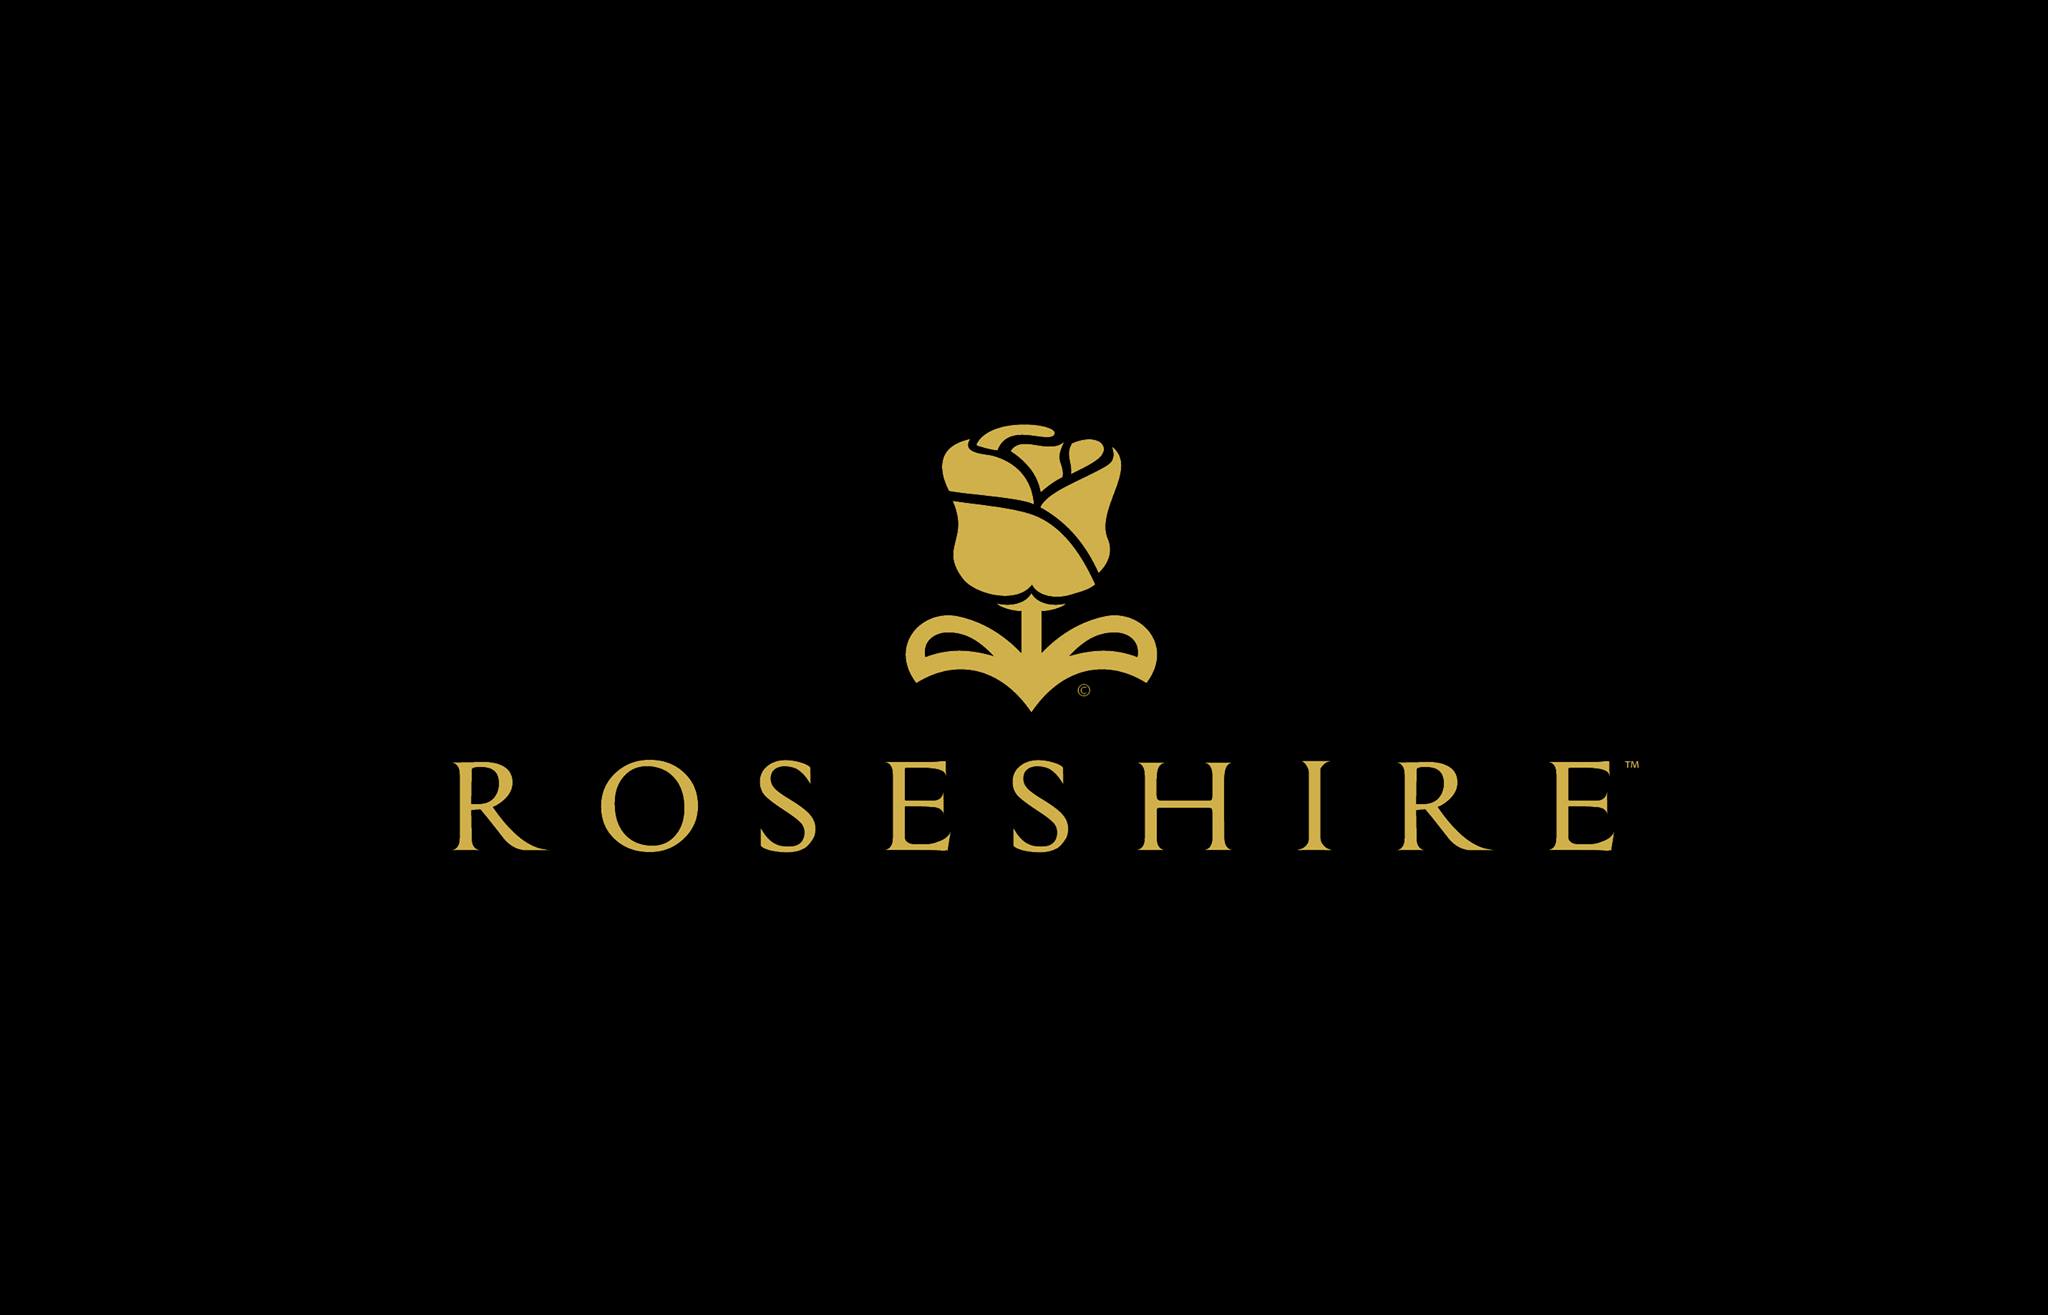 Company logo of Roseshire